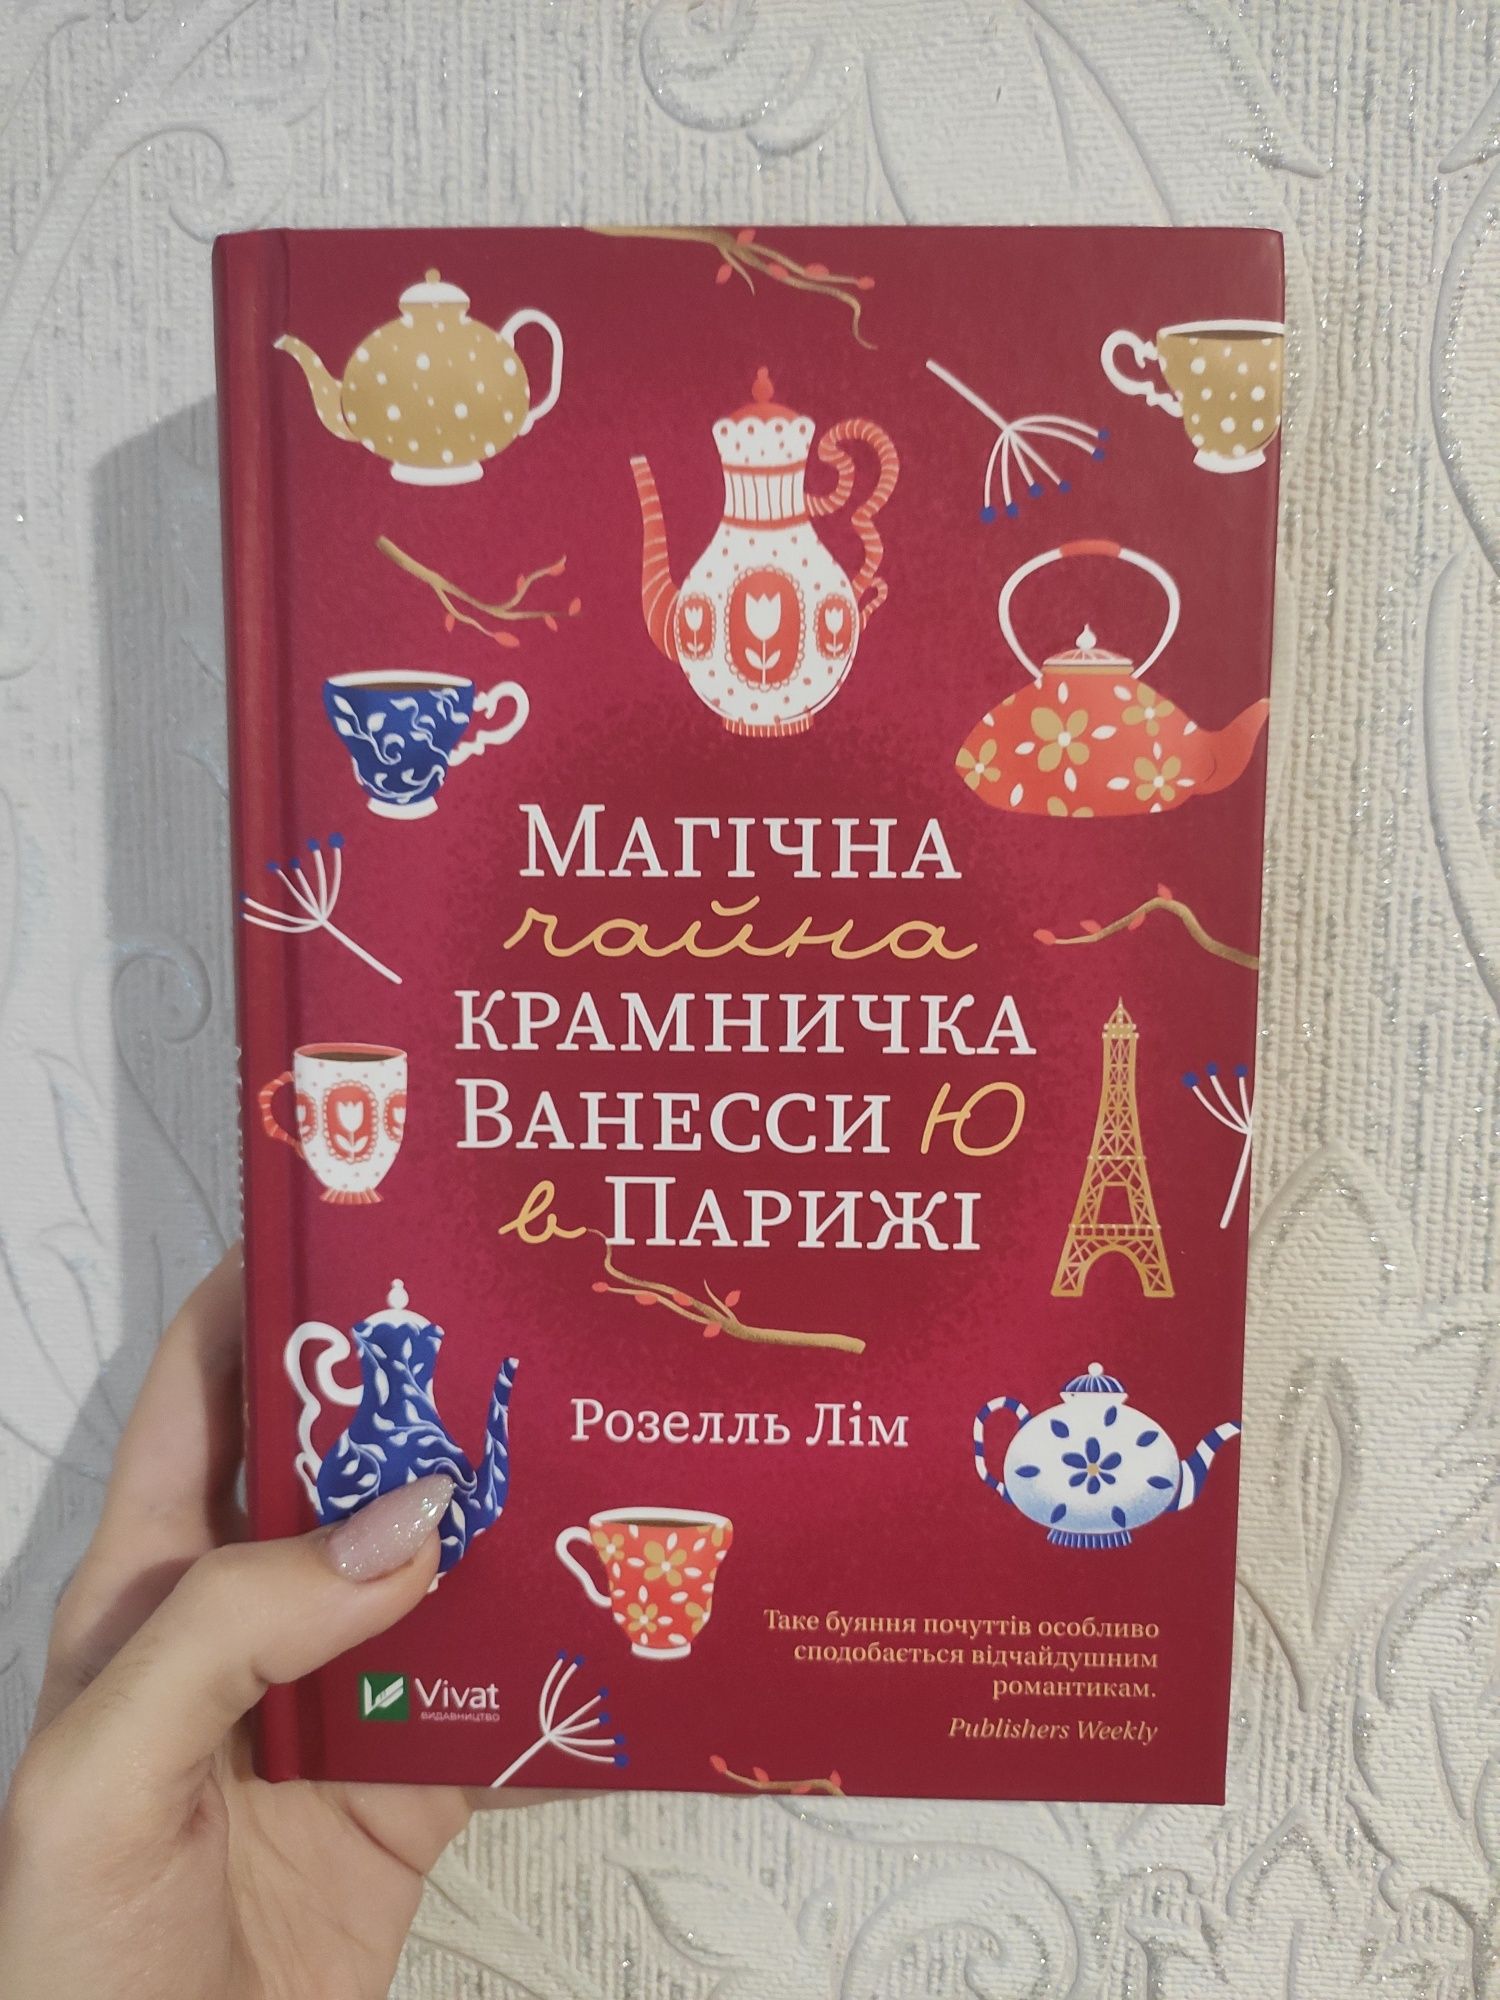 Книга Магічна чайна крамничка Ванесси Ю в Парижі Розелль Лім